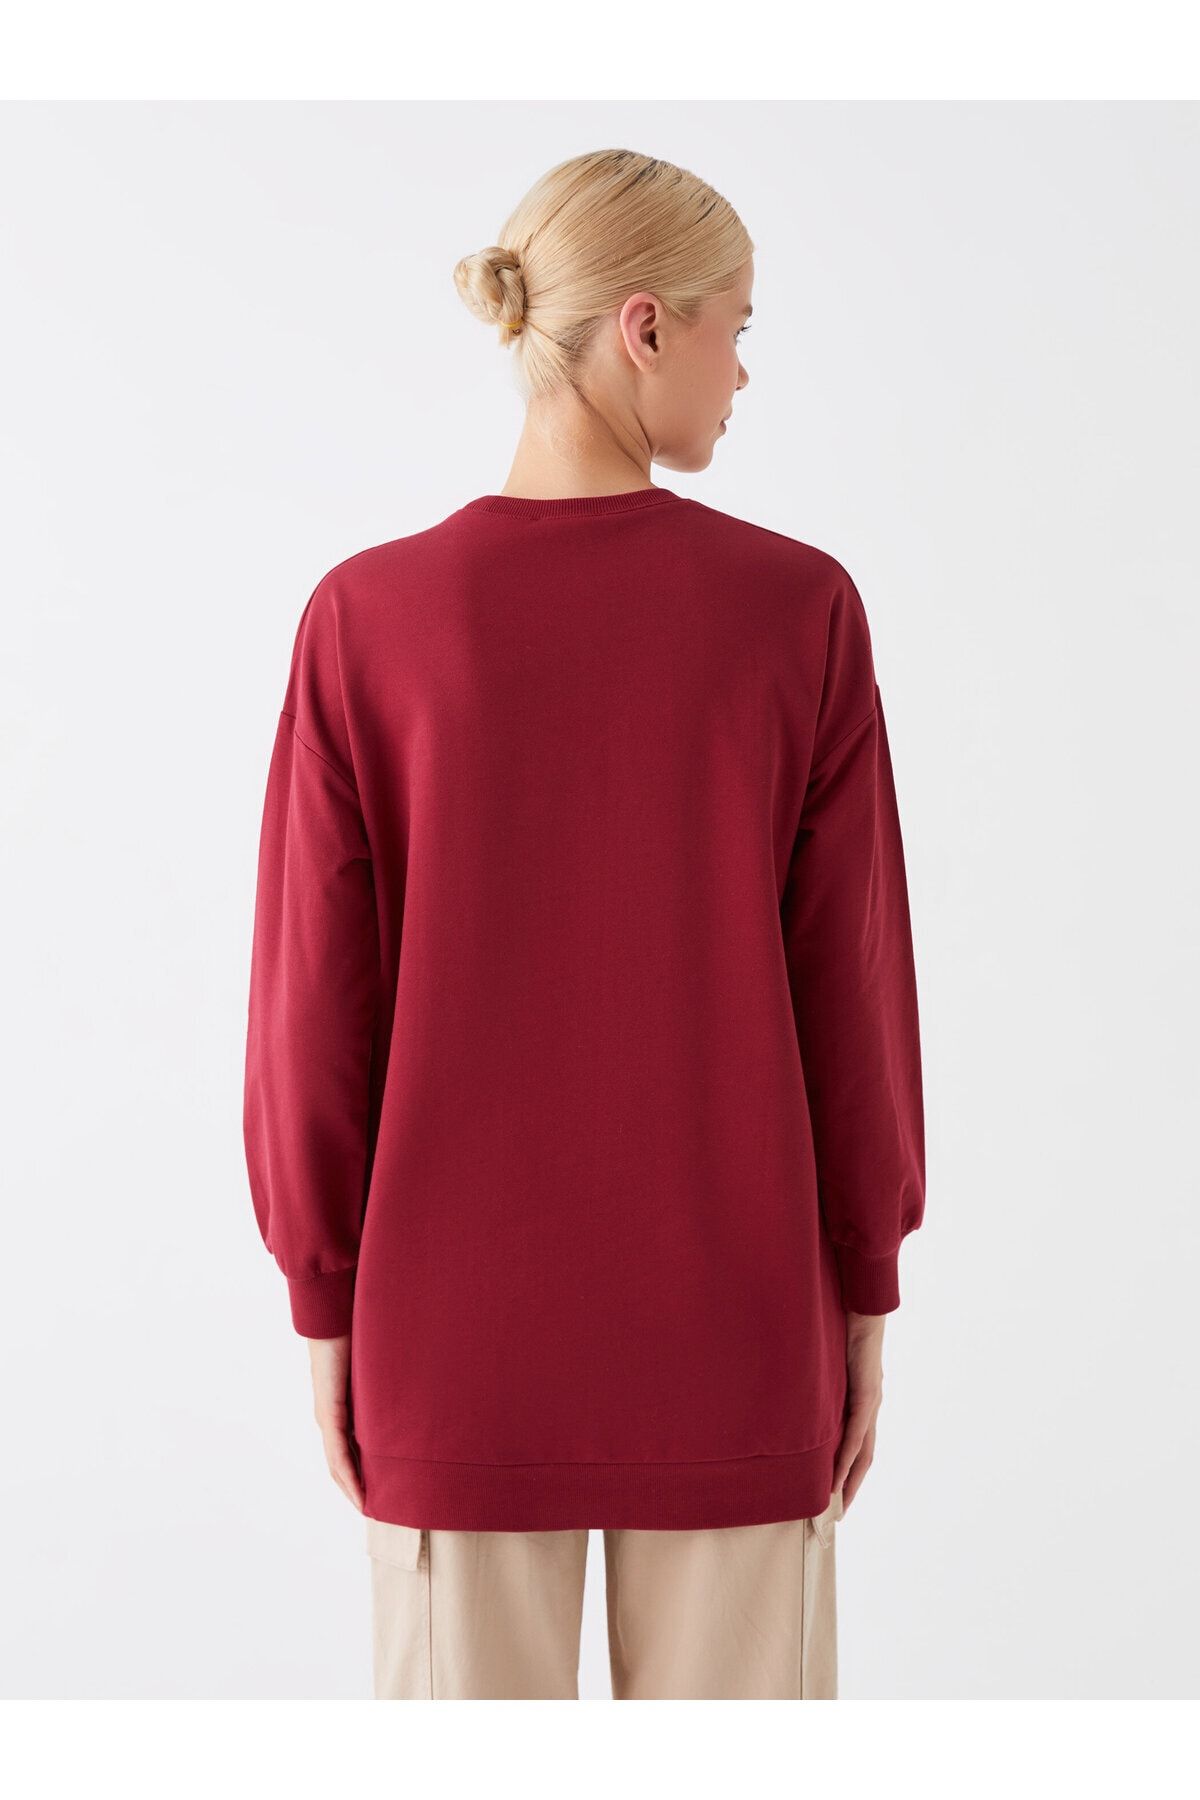 Crew Neck Printed Long Sleeve Oversize Women's Sweatshirt Tunic